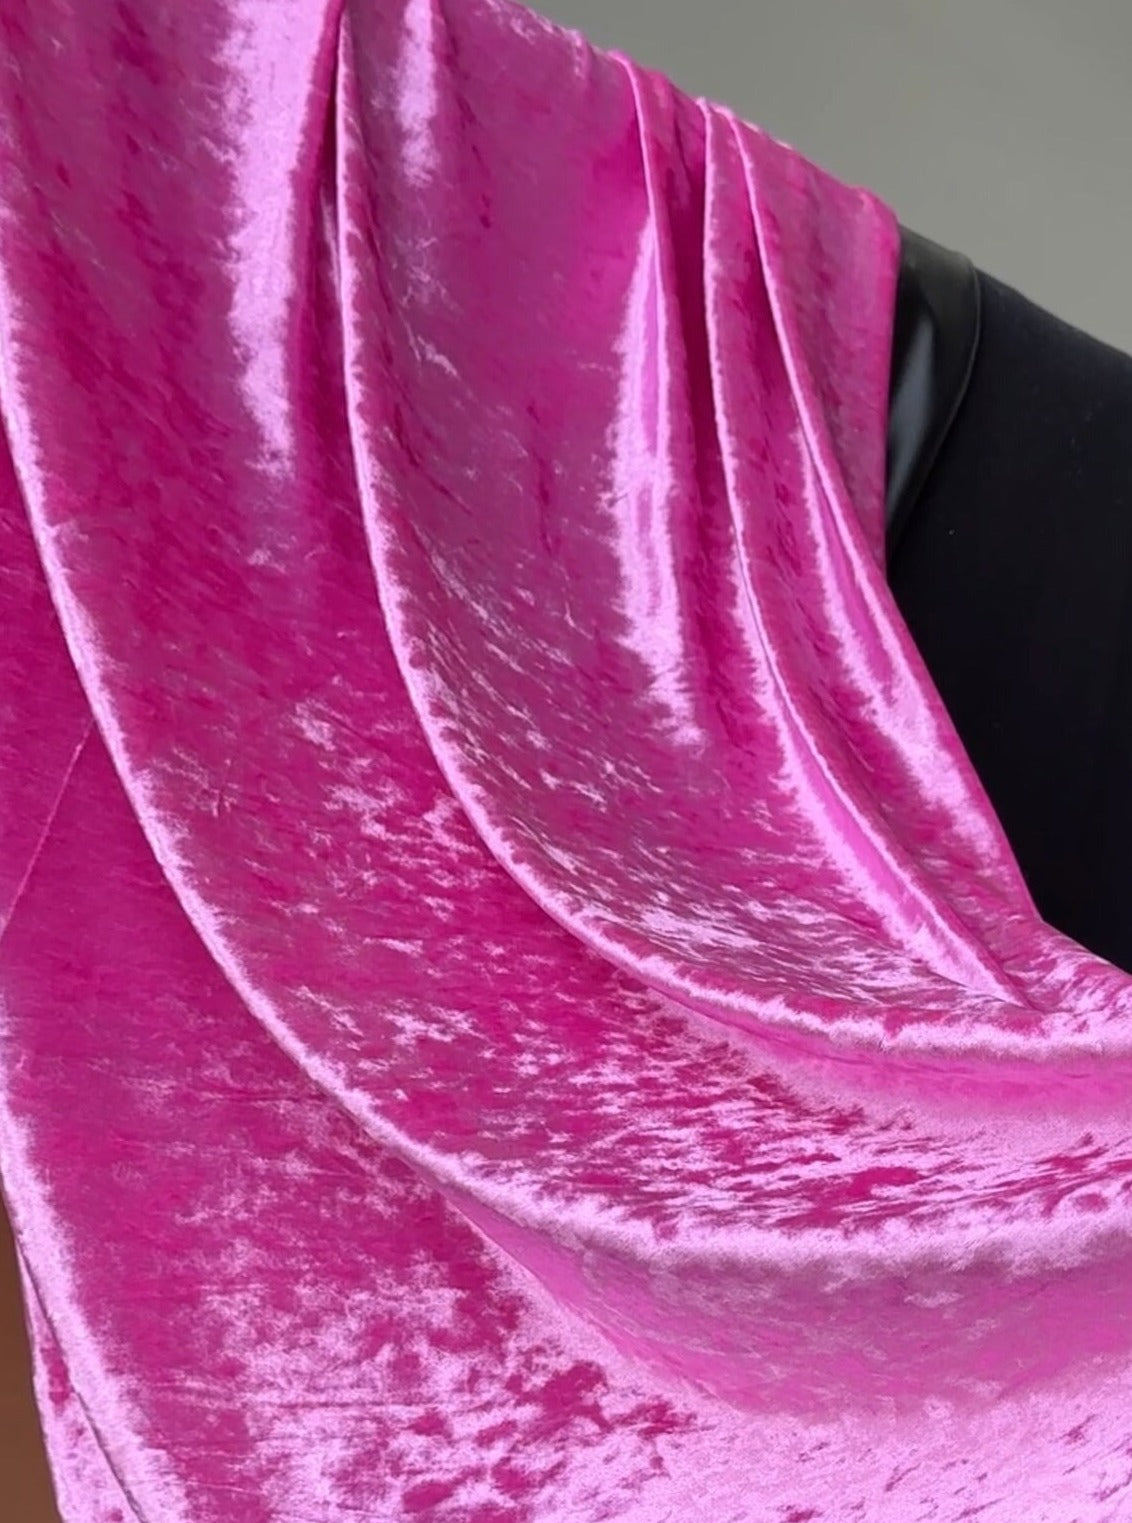 bright pink luxury velvet,Pink  Crushed Velvet, velvet cloth, light pink velvet, crushed velvet, velvet for gown, hot pink crushed velvet, velvet fabric, solid velvet, light pink crushed fabric, crushed velvet fabric for gown, 4 way crushed velvet